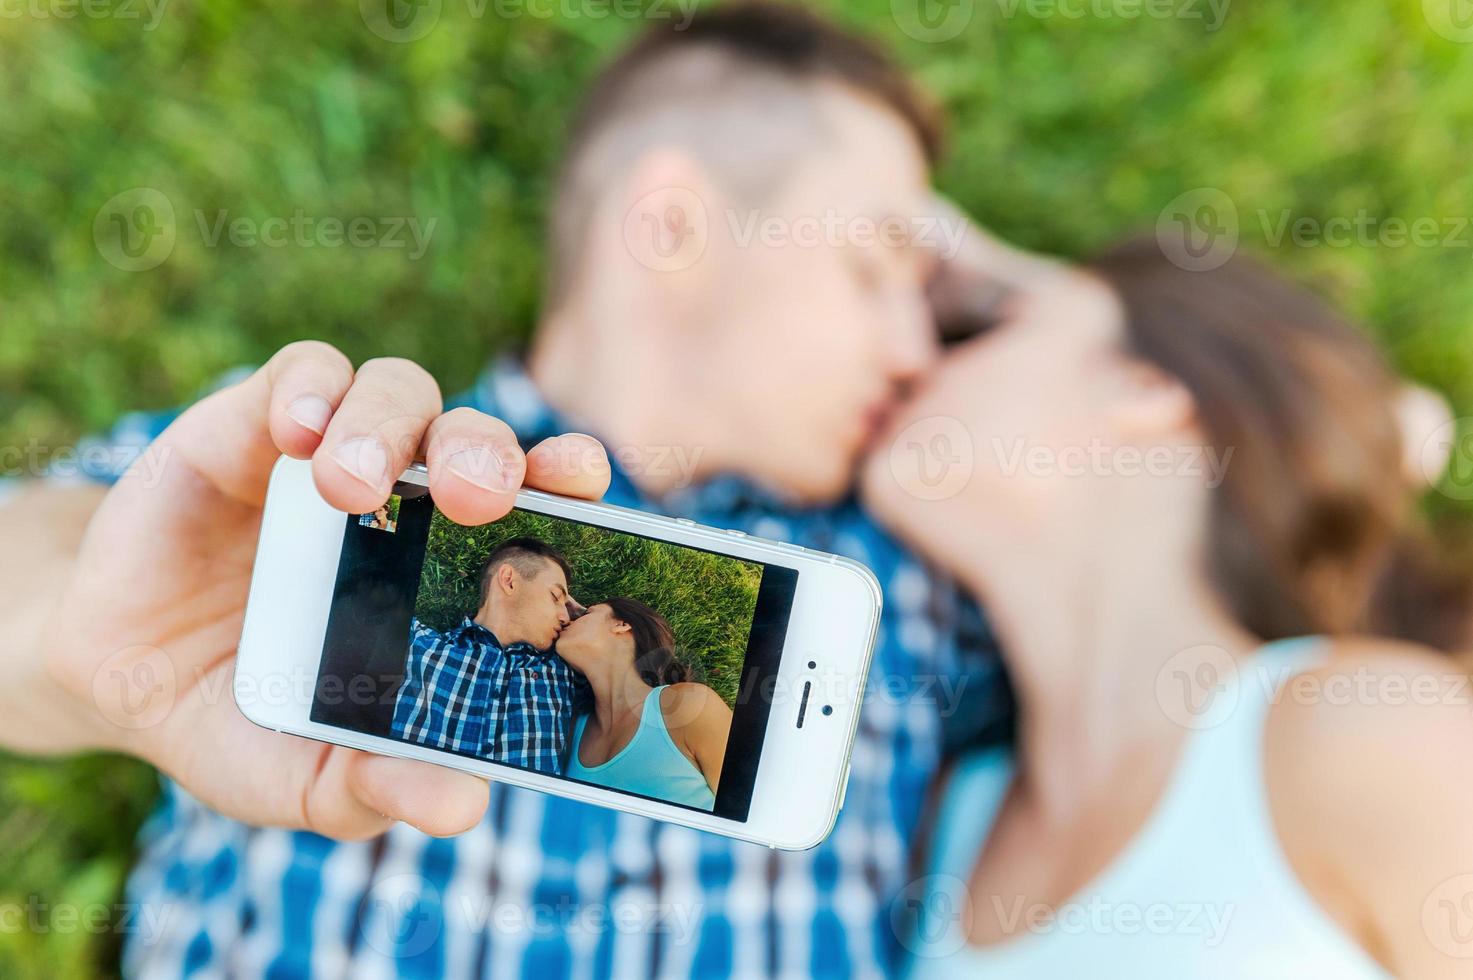 capturando um momento. vista superior do feliz jovem casal amoroso fazendo selfie com telefone inteligente enquanto estava deitado na grama e beijando foto